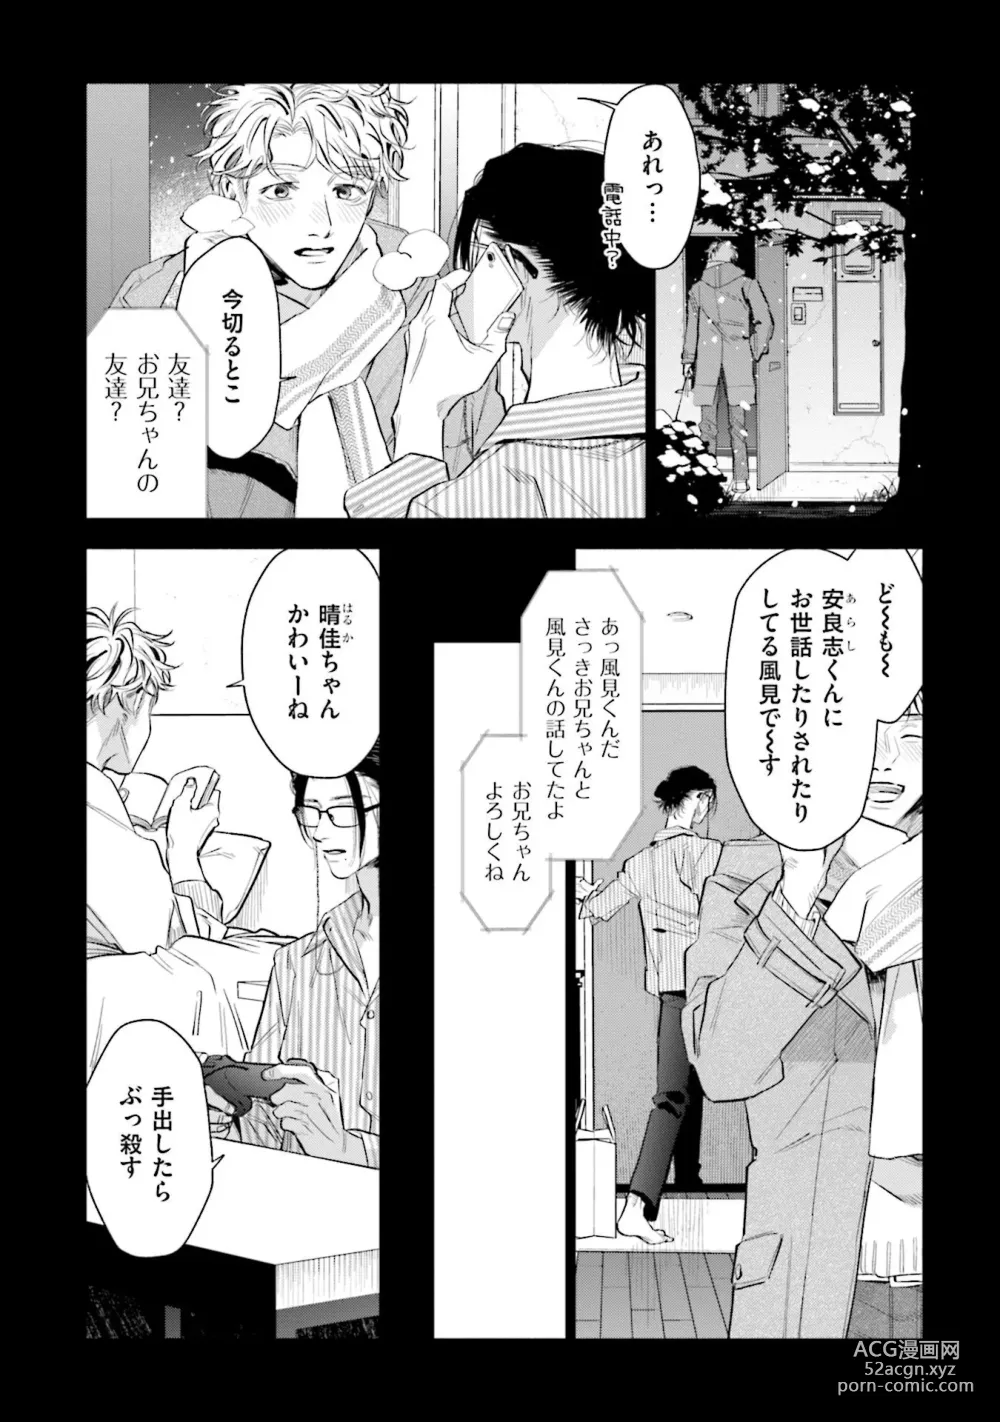 Page 14 of manga Hitoriyogari no Vanilla